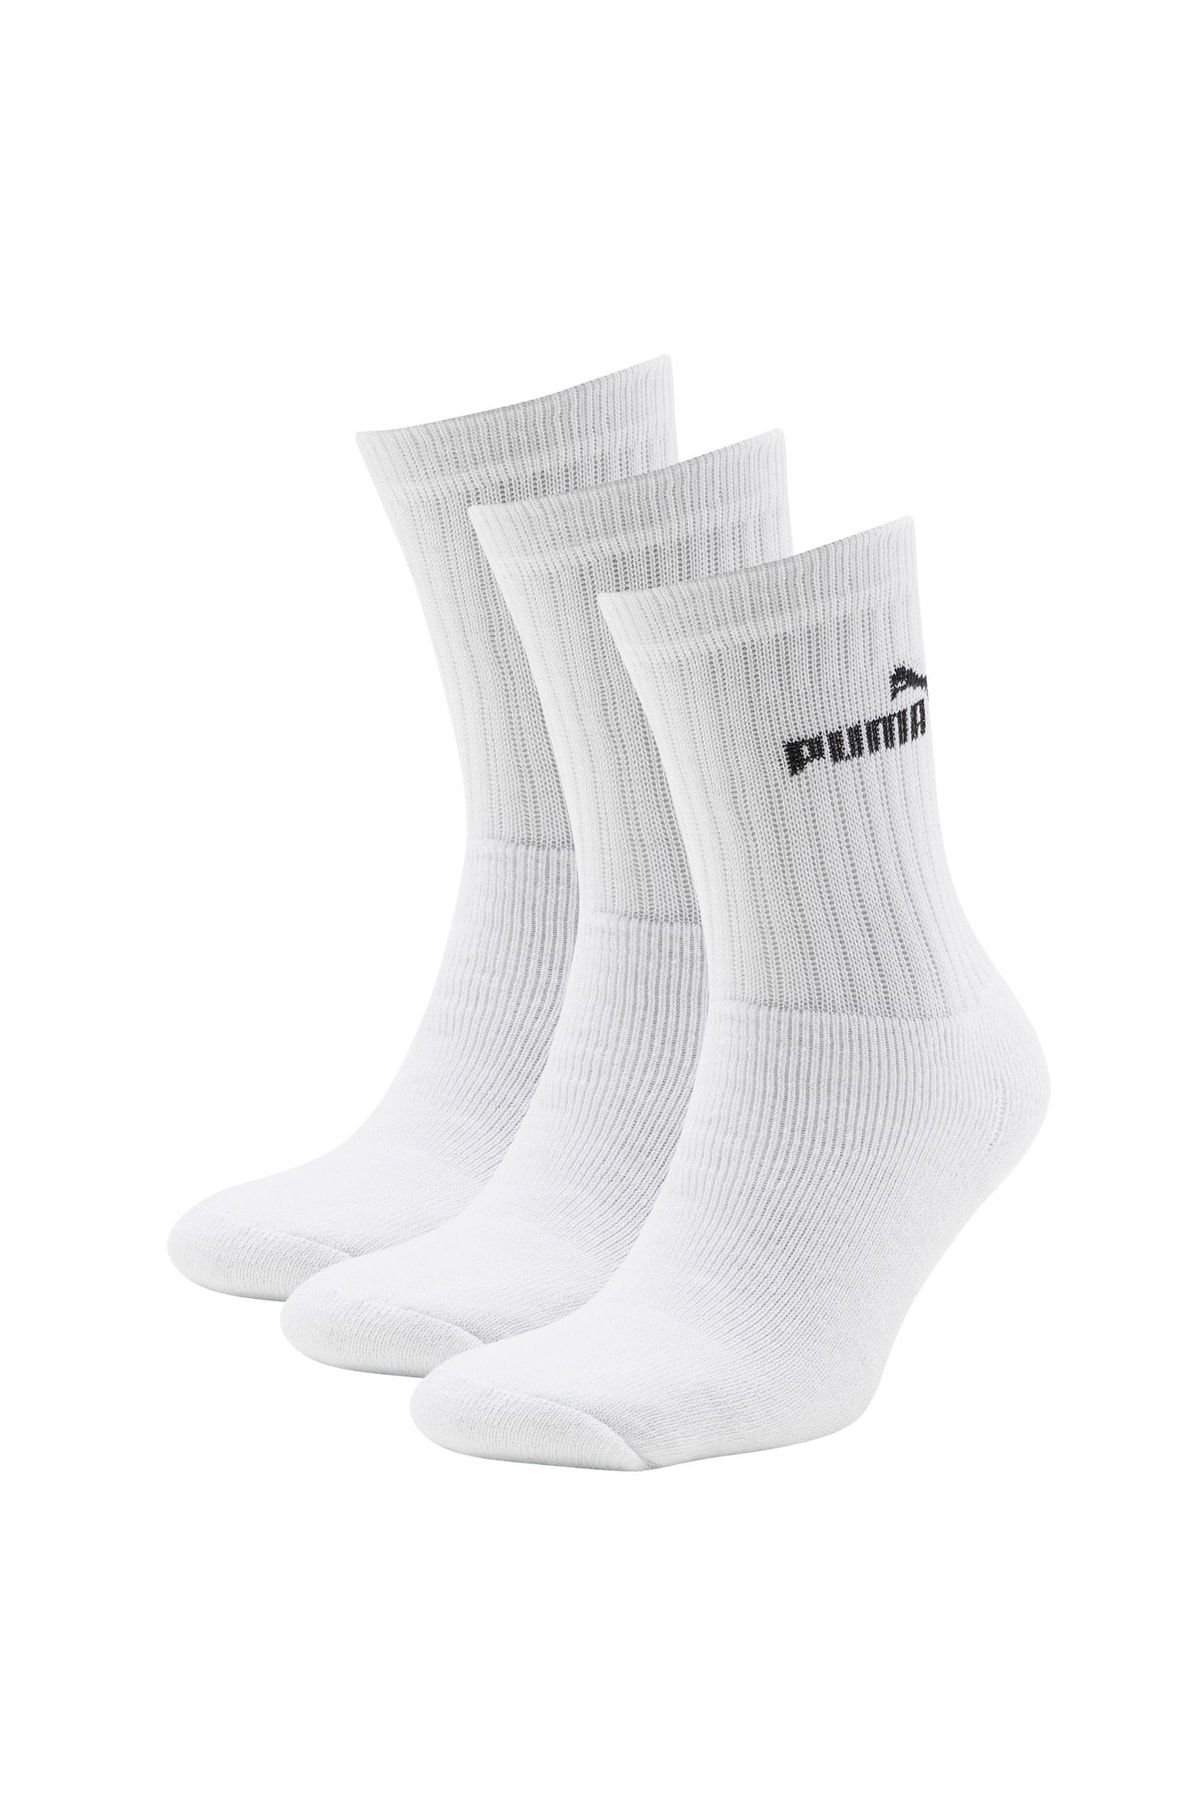 Puma SPORT Beyaz Erkek Uzun Soket Çorap 100119022